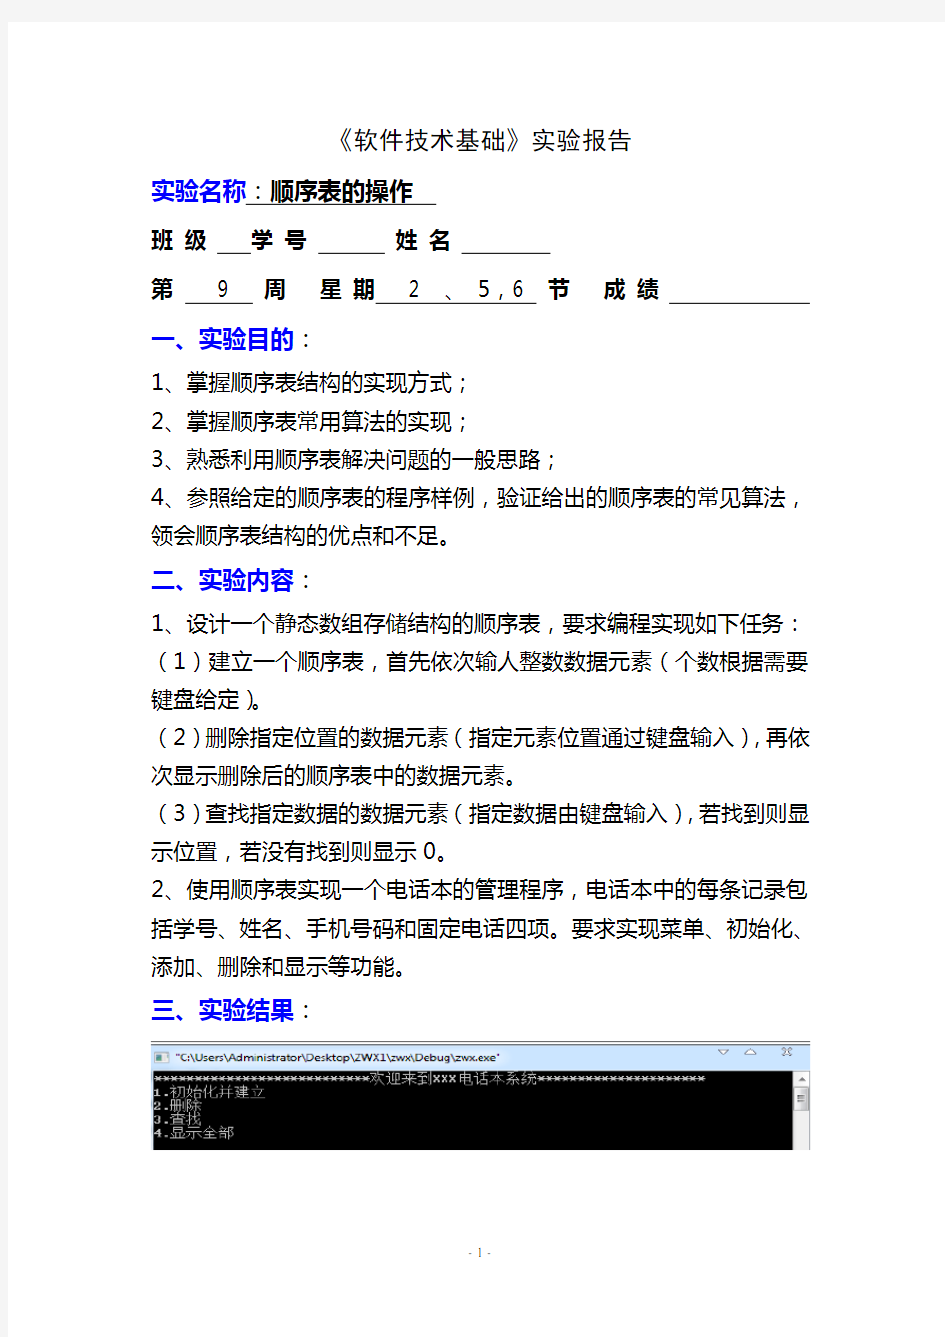 重庆邮电大学软件专业技术基础实验报告(耿道渠)